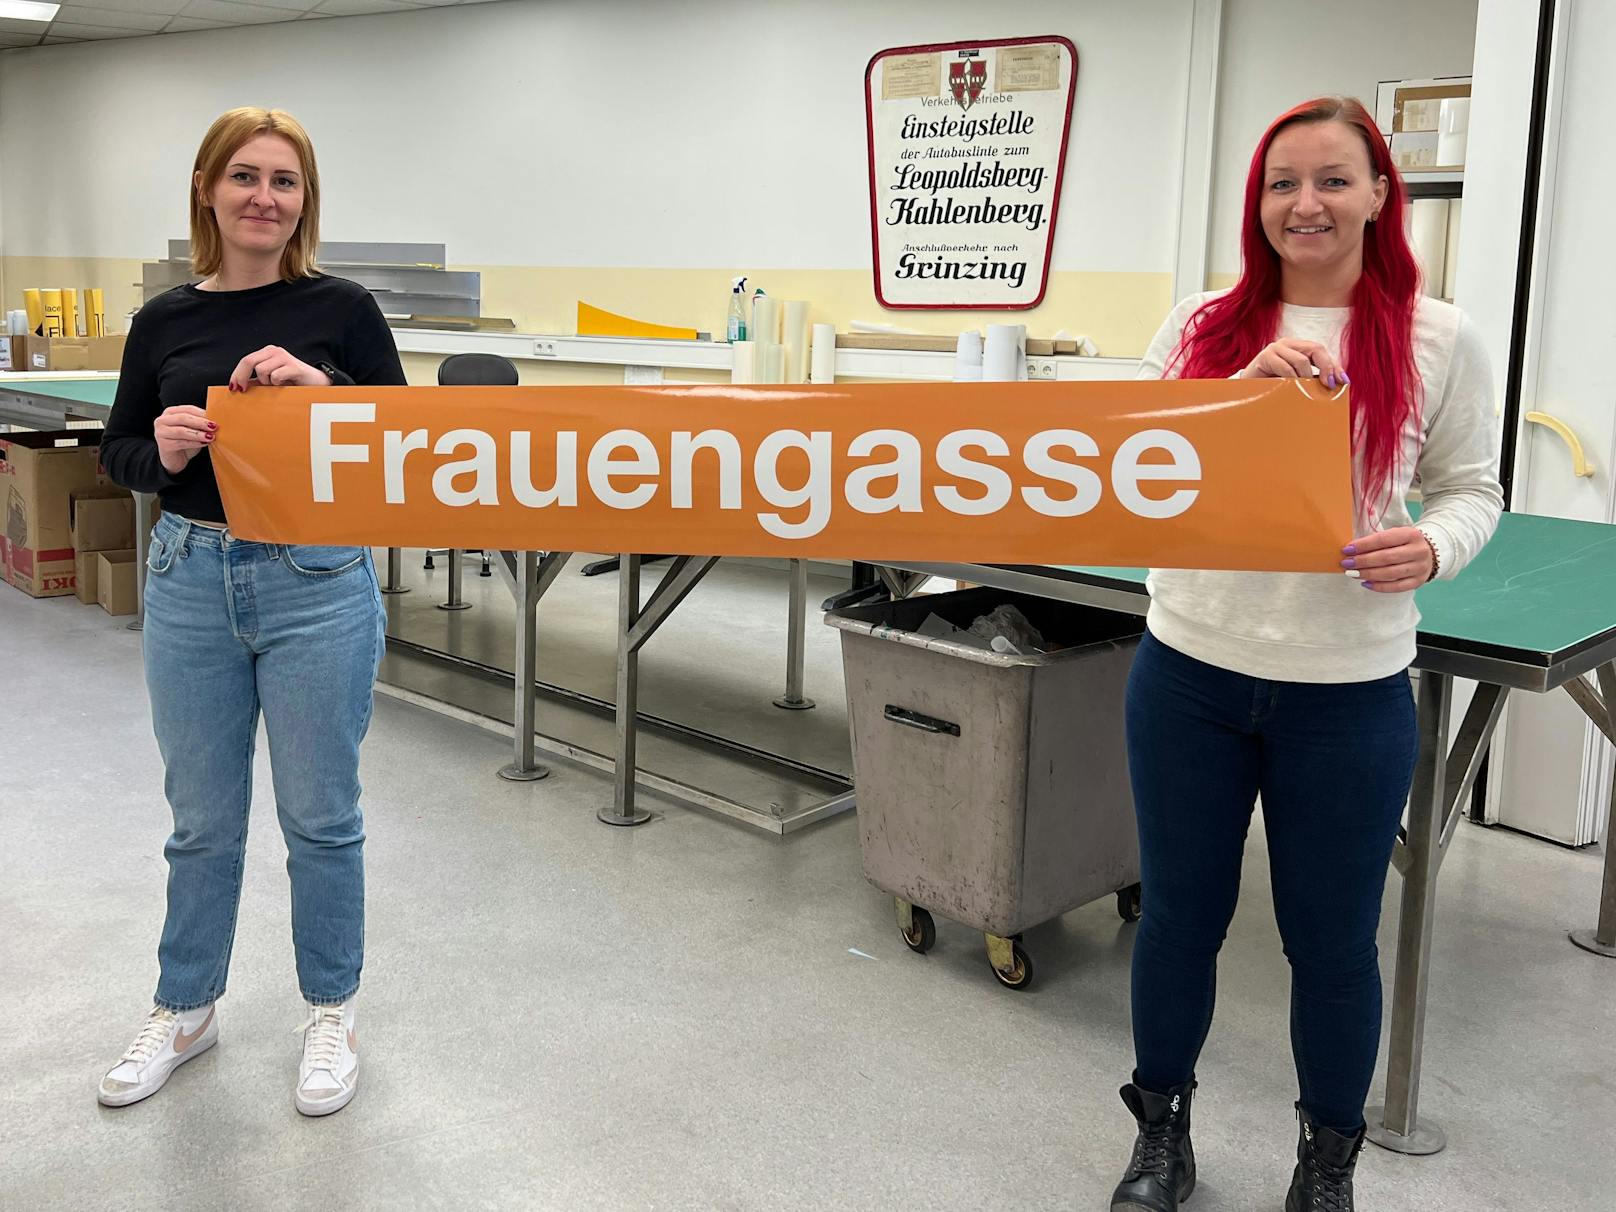 Alles bereit für die Umgestaltung: Wiener Linien-Mitarbeiterinnen Julia und Tatjana bereiten alles vor, damit die "Herrengasse" zur "Frauengasse" wird.